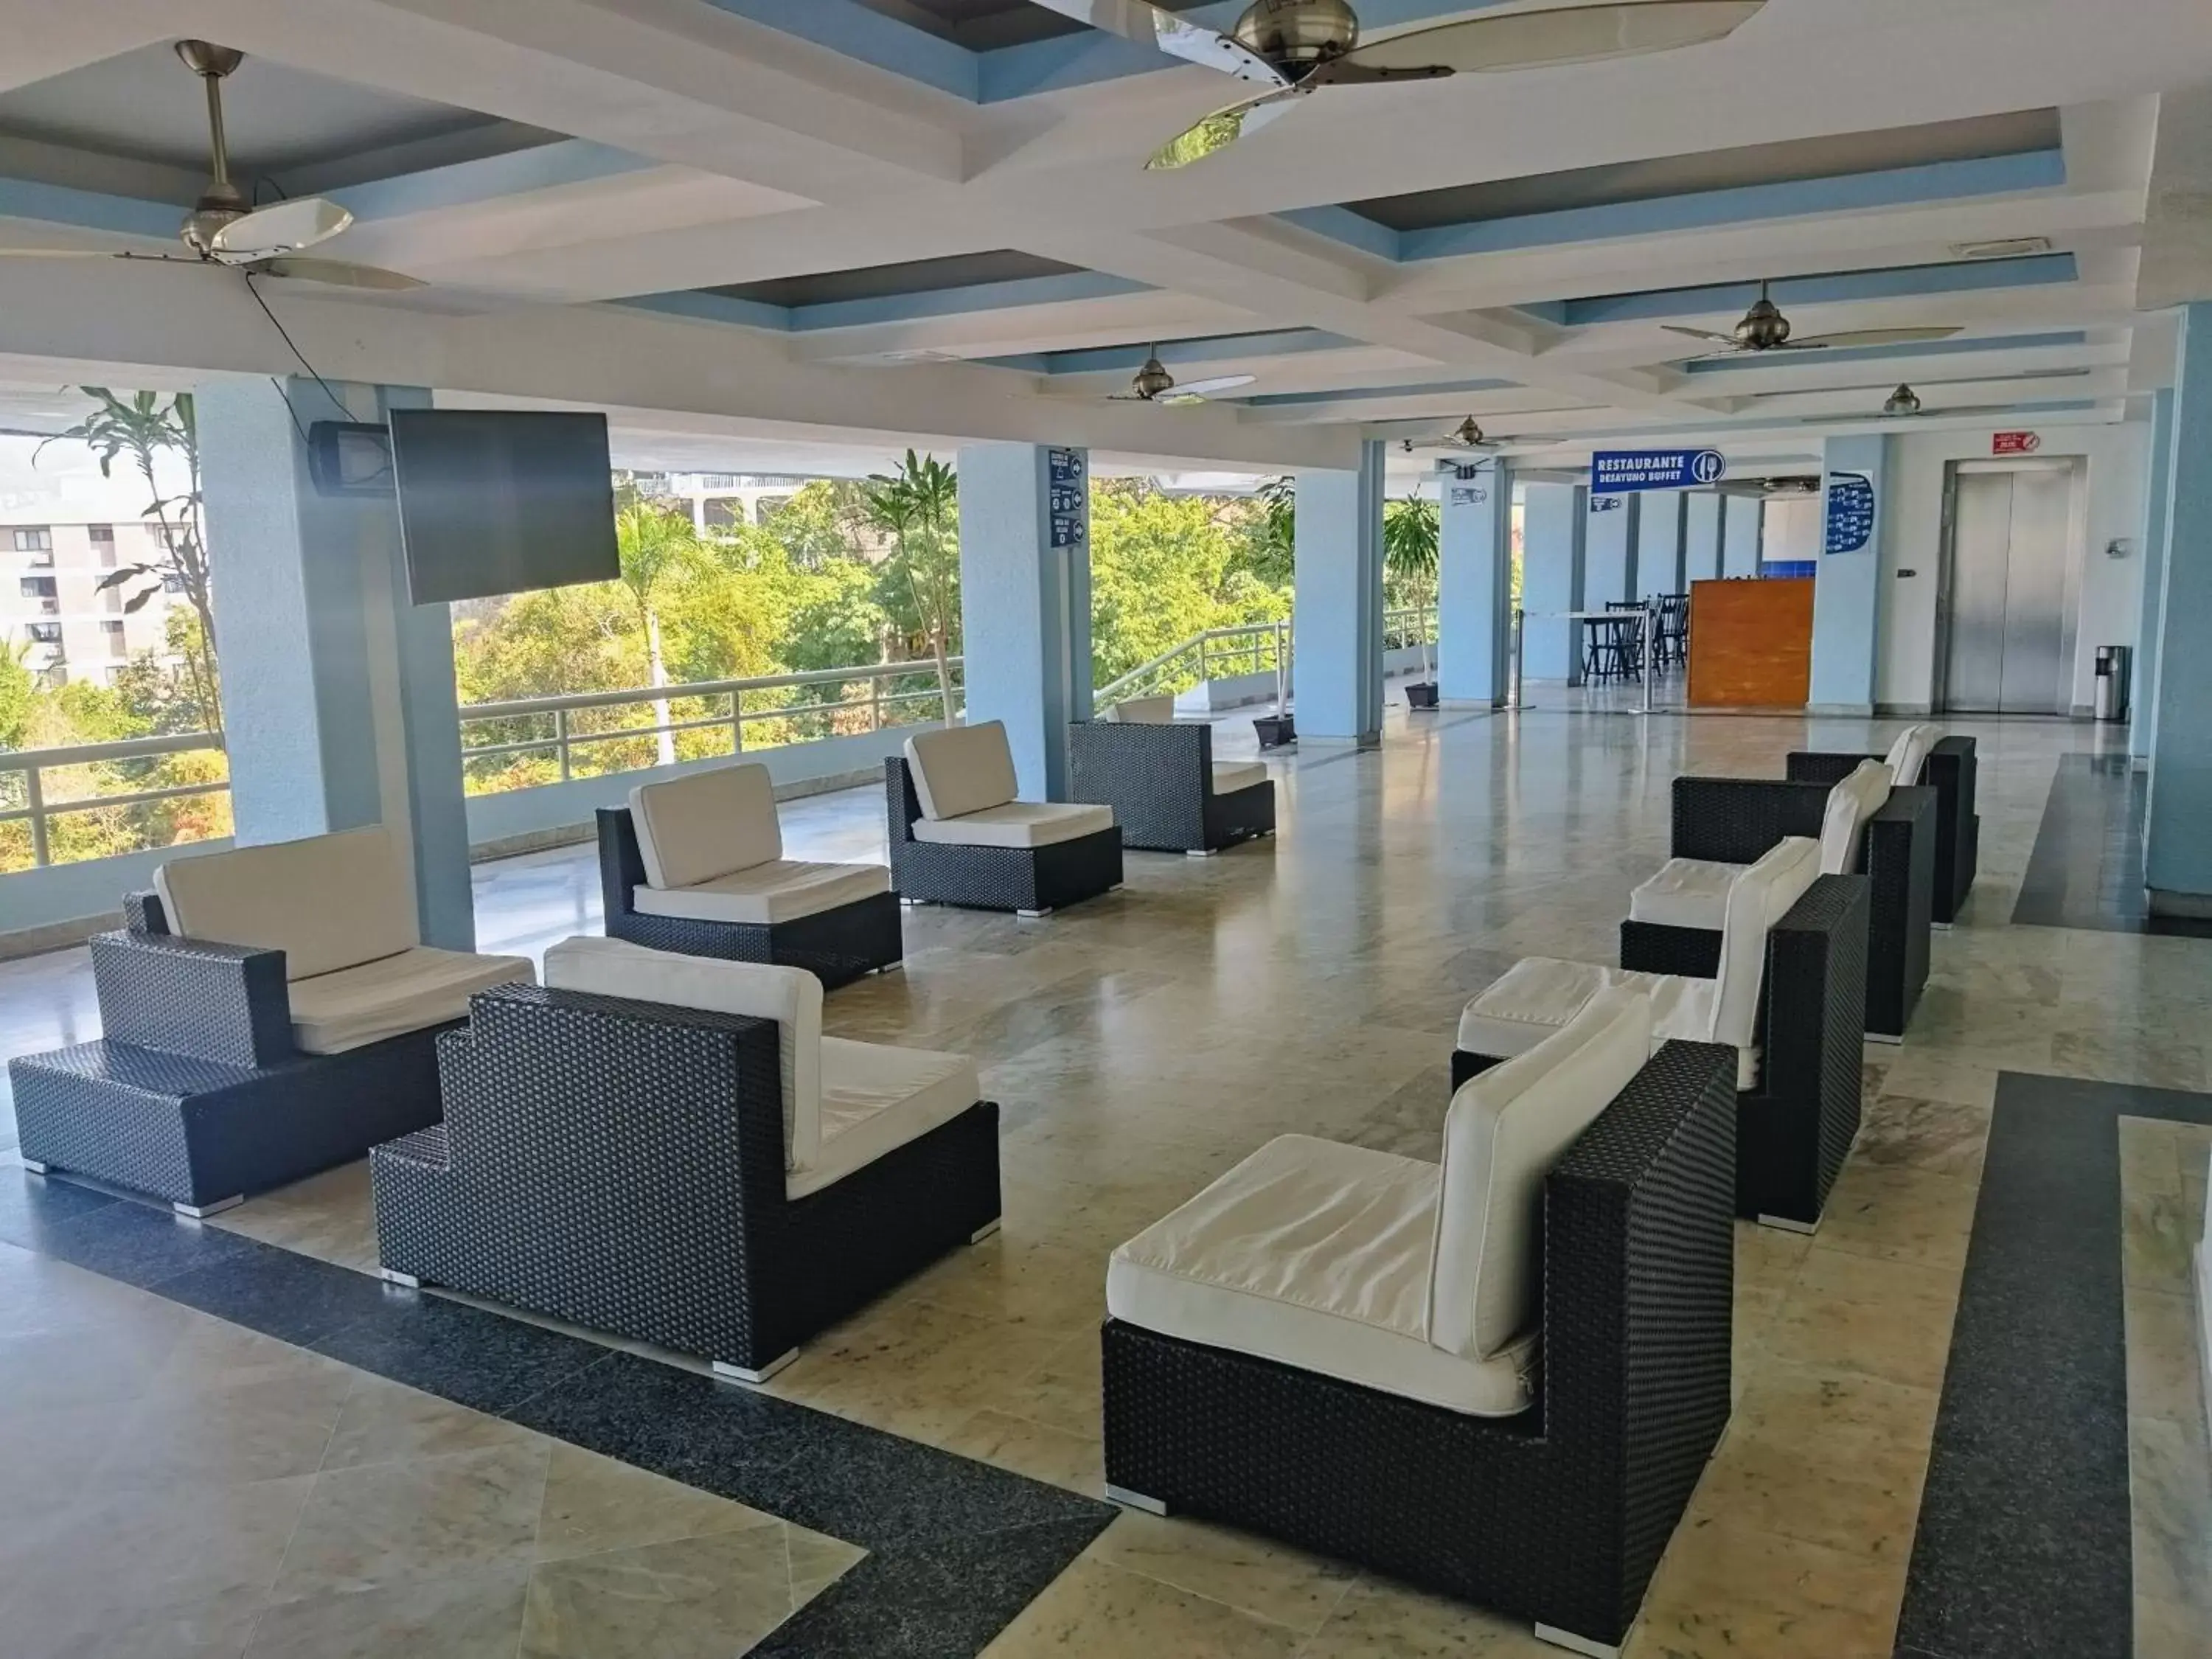 Lobby or reception in Hotel Aristos Acapulco